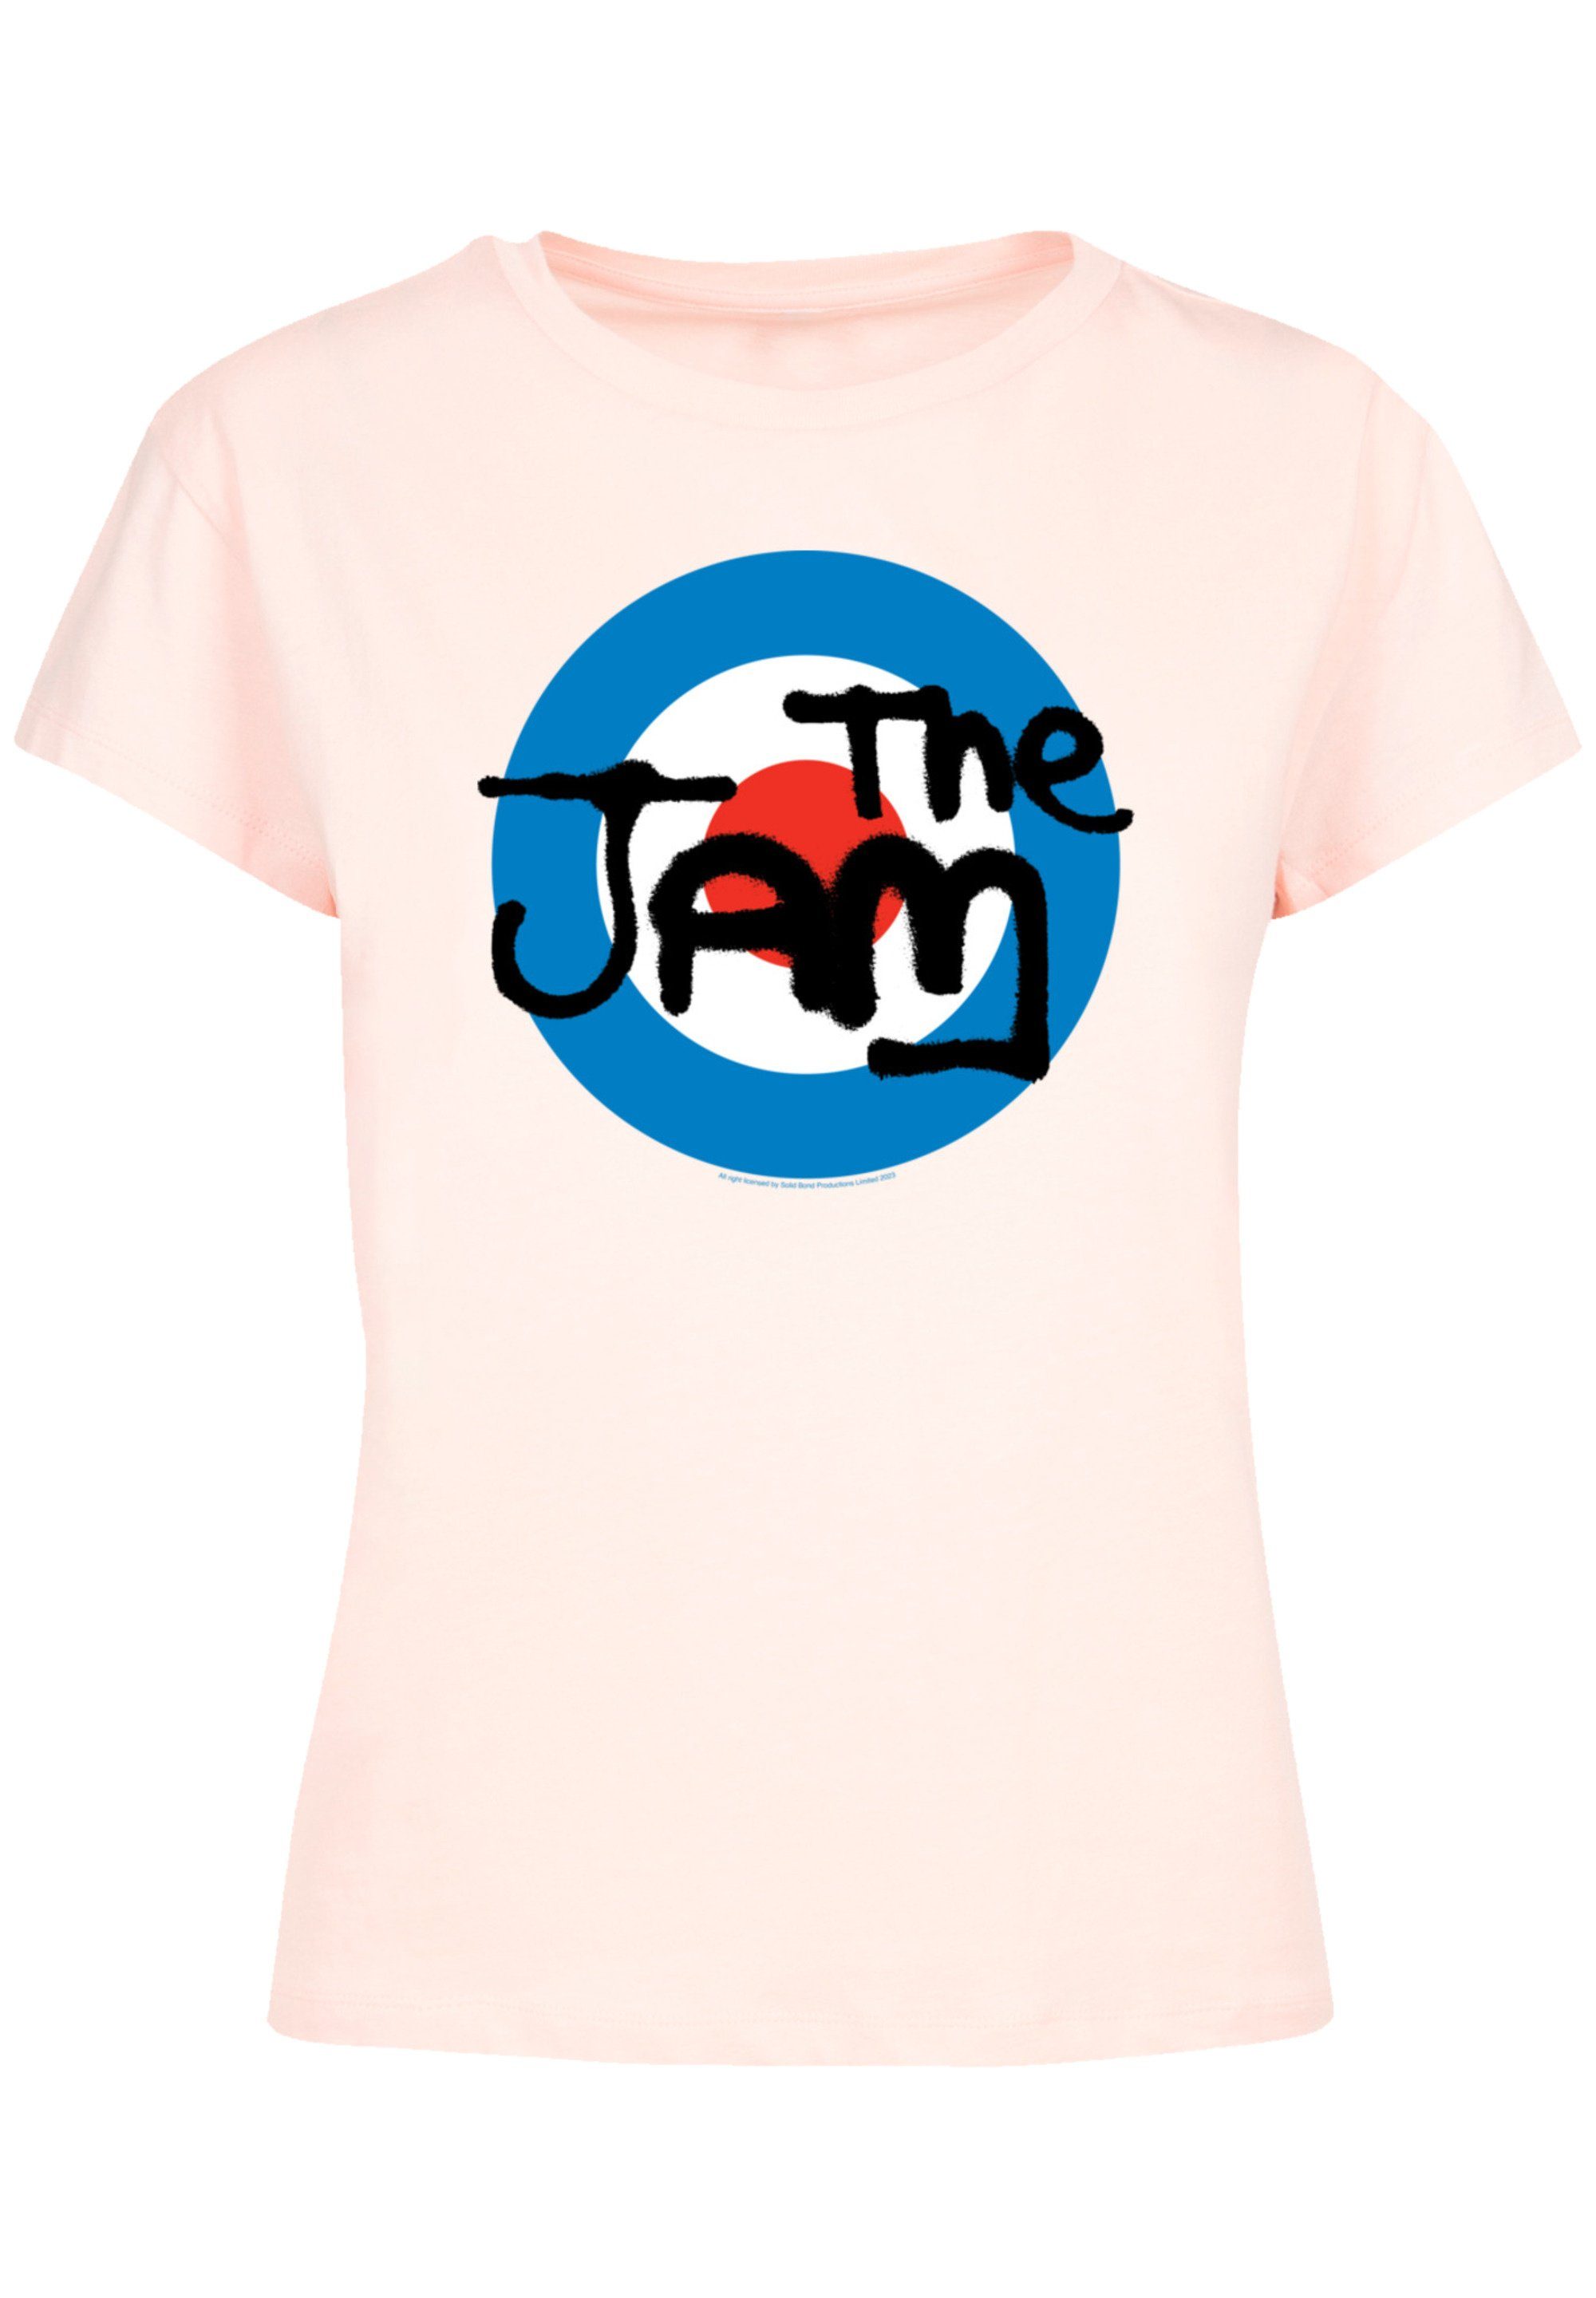 Premium The Perfekte Jam Passform T-Shirt F4NT4STIC Classic Verarbeitung Qualität, Logo Band hochwertige und